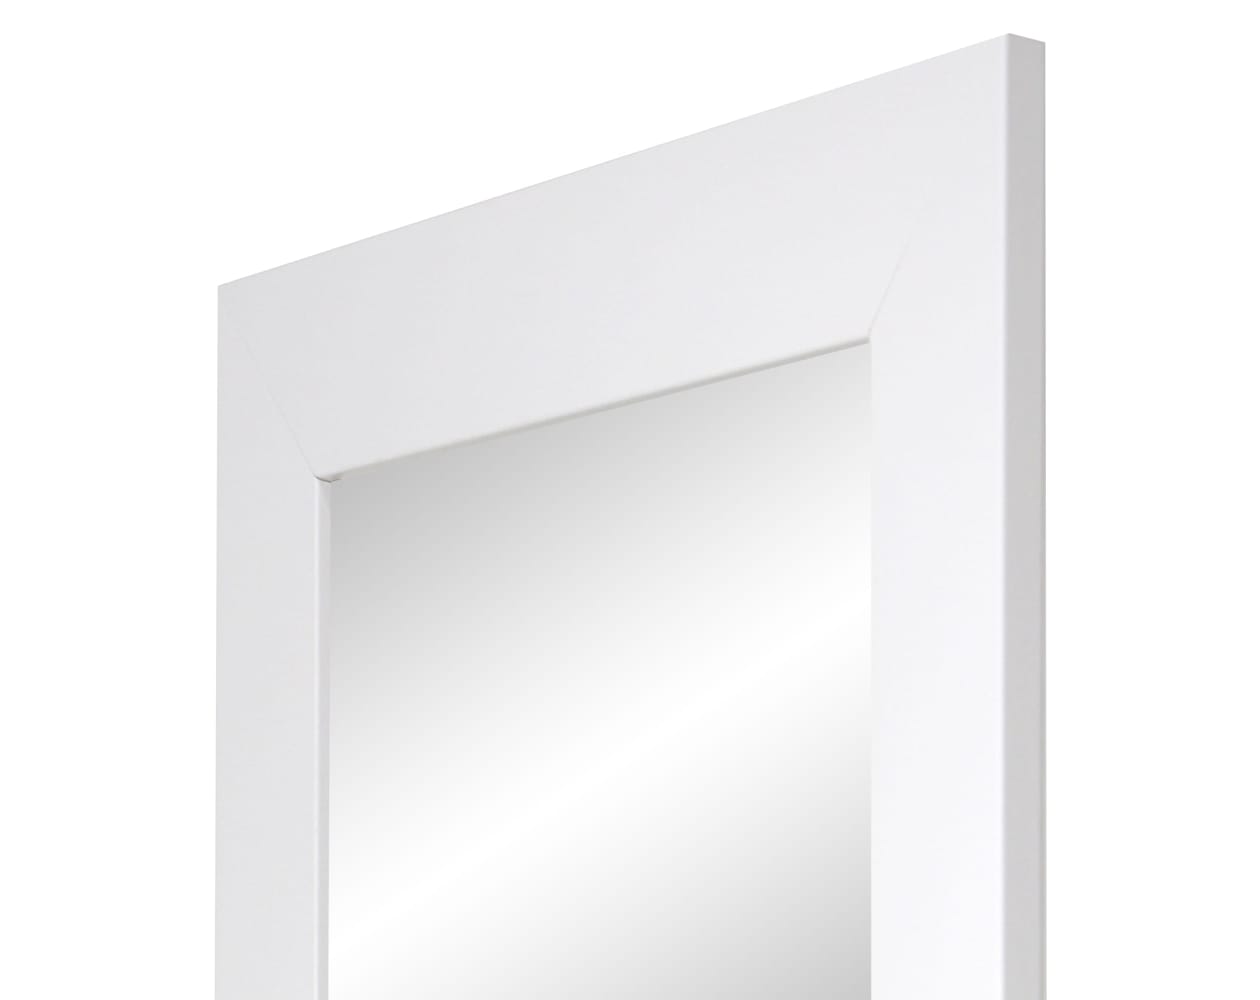 Espejo de Pared cuerpo entero- Modelo MDF8 color blanco de 55x150 cm